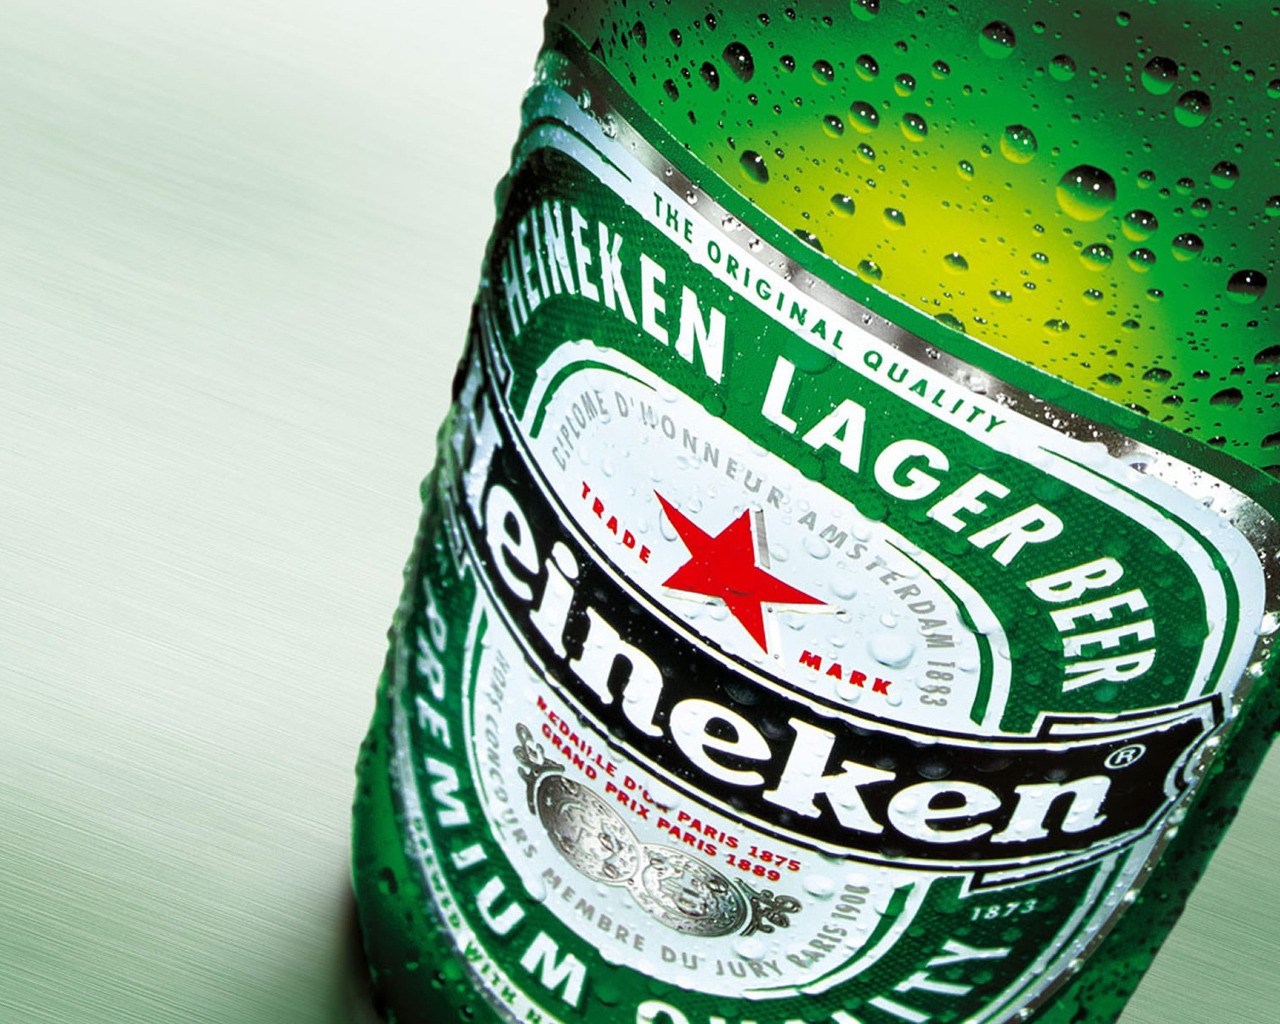 Heineken Beer for 1280 x 1024 resolution